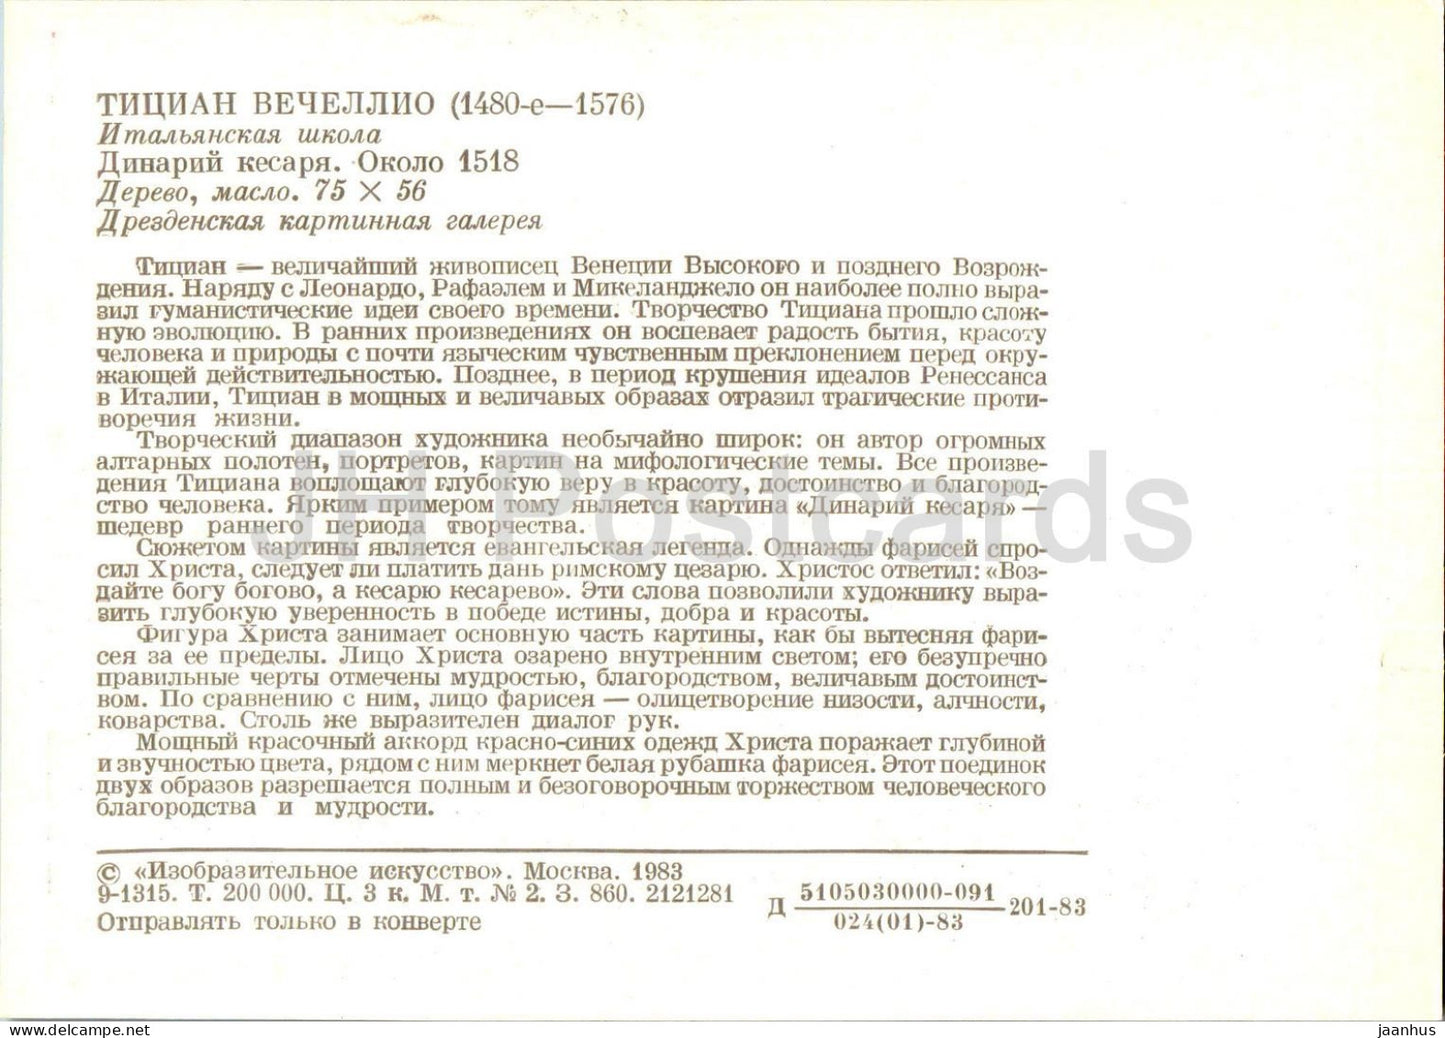 Gemälde von Tizian - Caesars Denarii - Italienische Kunst - 1983 - Russland UdSSR - unbenutzt 